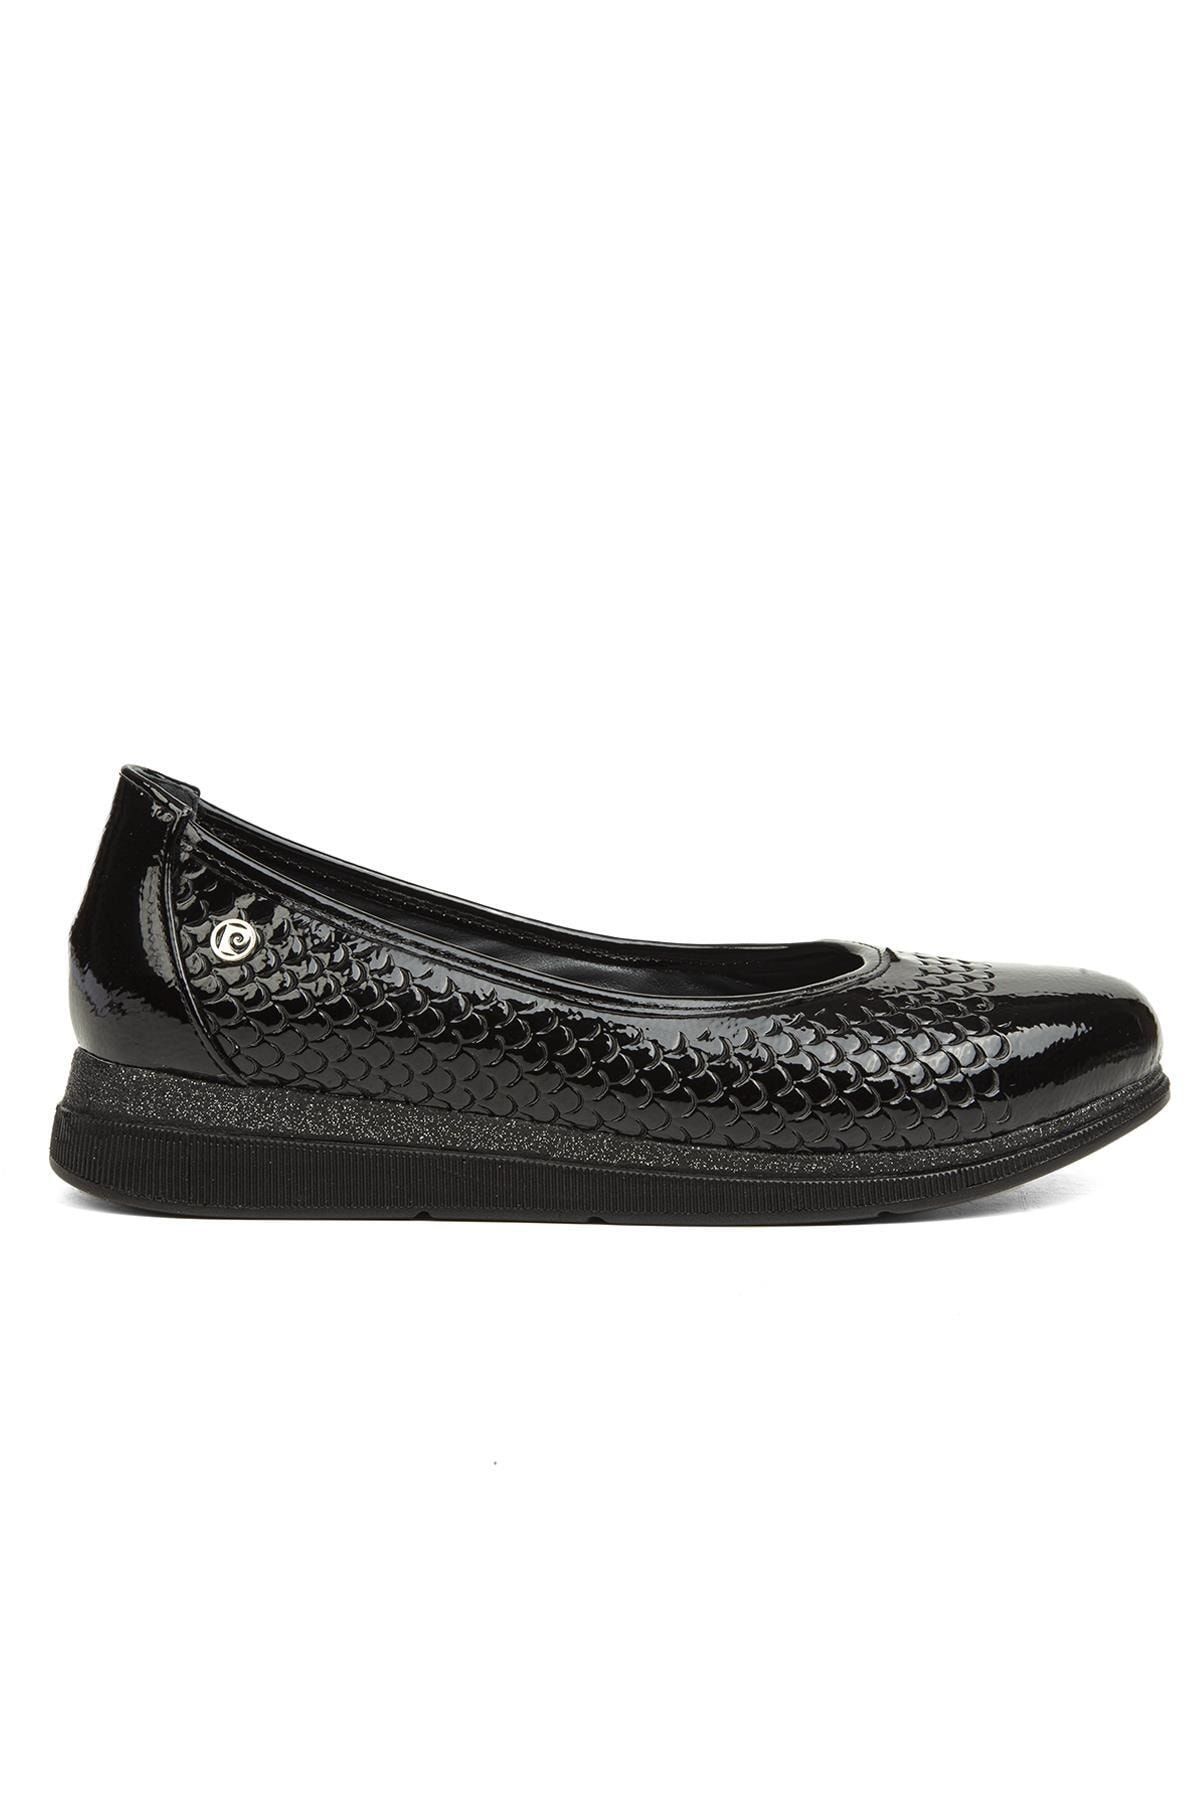 Pierre Cardin ® | Pc-51936-3441 Rugan Siyah - Kadın Günlük Ayakkabı